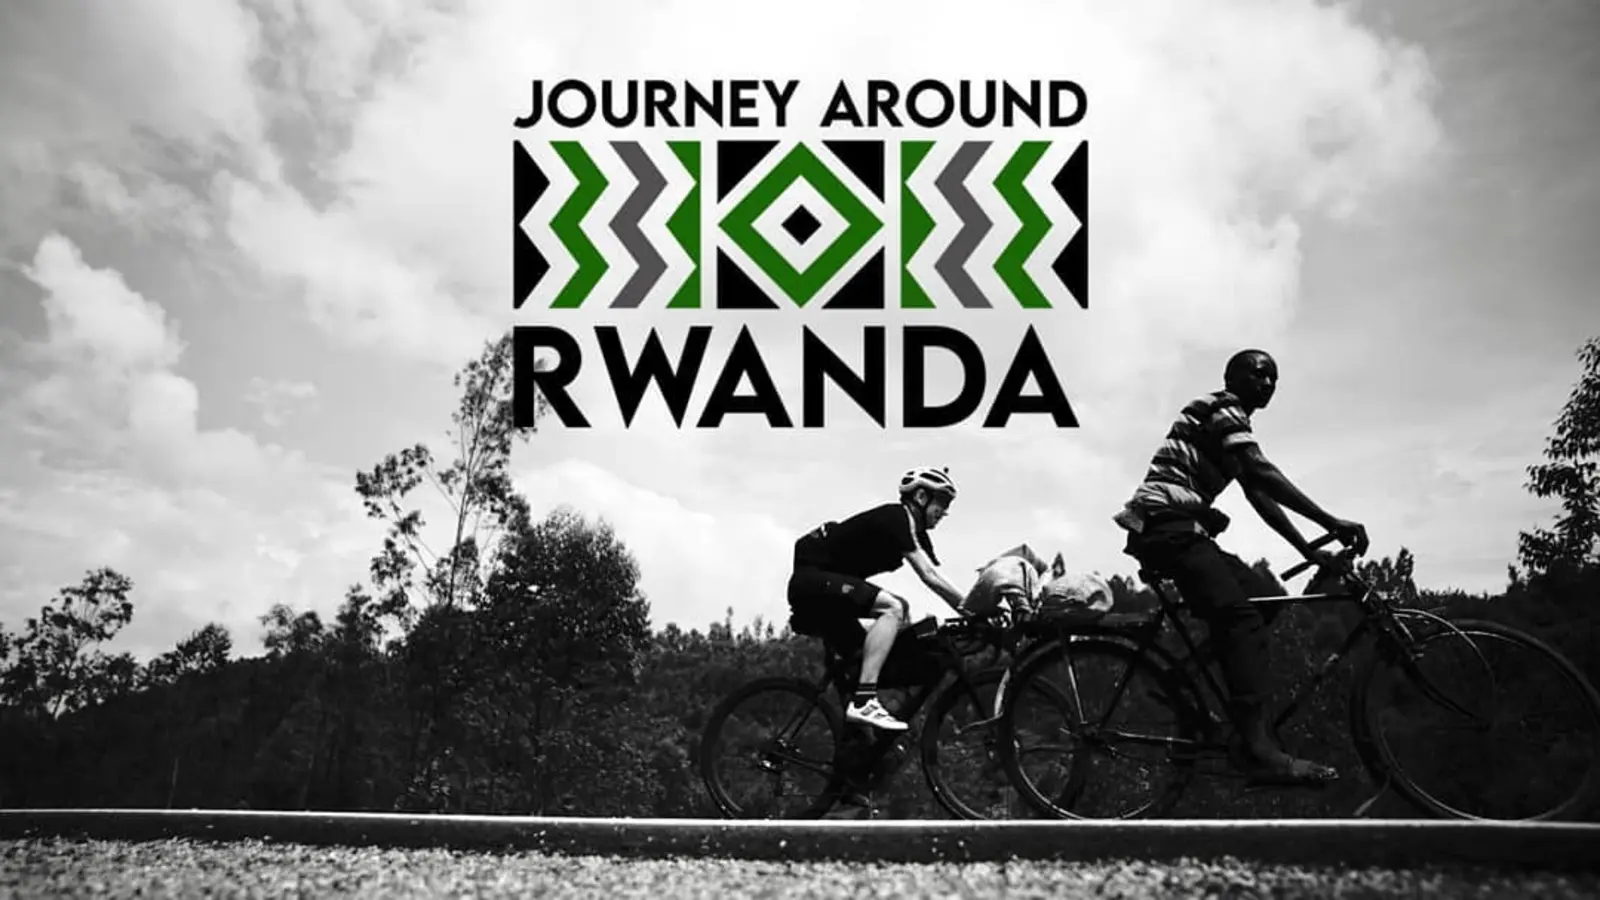 Bikes of Journey Around Rwanda 2021